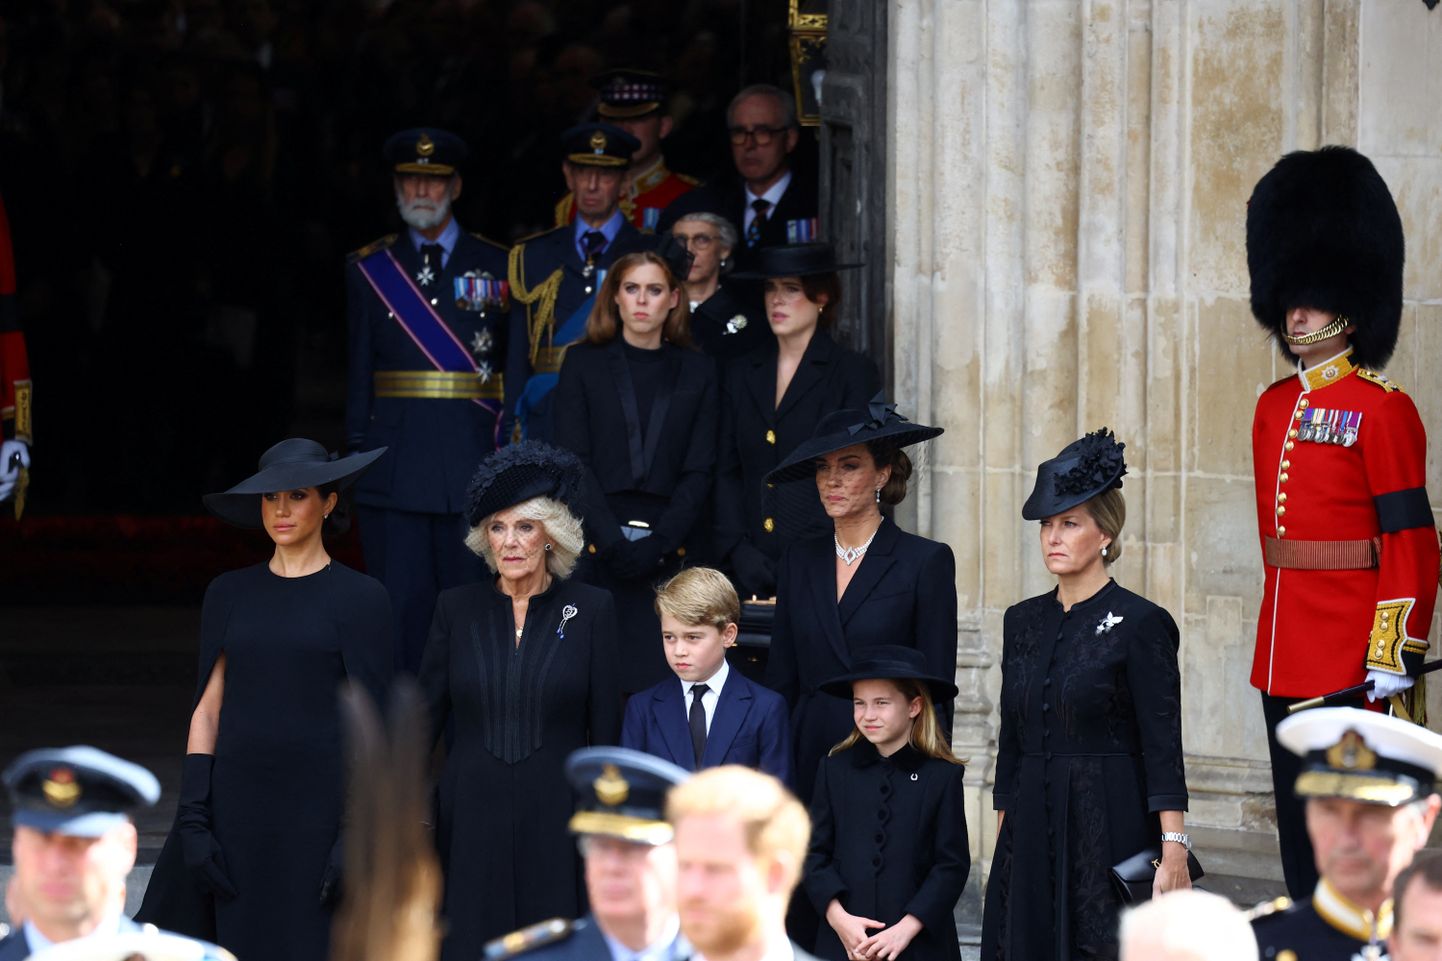 Kuninganna Elizabeth II matuse rongkäiku jälgivad prints Harry abikaasa Meghan, kuninganna Camilla, prints George, Walesi printsess Catherine, printsess Charlotte ja Wessexi krahvinna Sophie. Taamal seisavad printsess Beatrice ja printsess Eugenie.